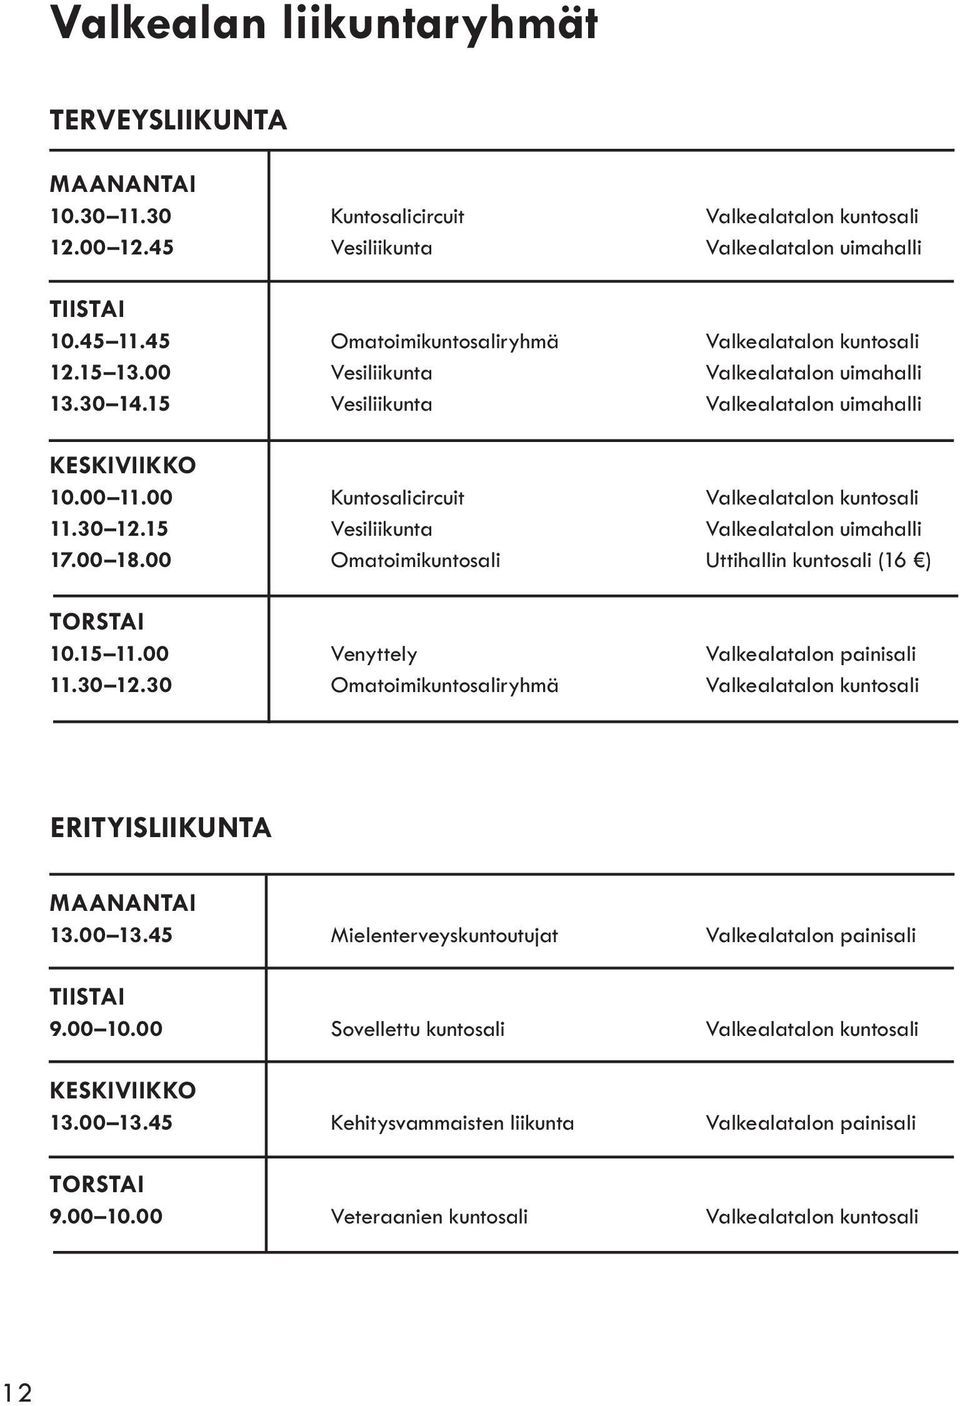 00 Kuntosalicircuit Valkealatalon kuntosali 11.30 12.15 Vesiliikunta Valkealatalon uimahalli 17.00 18.00 Omatoimikuntosali Uttihallin kuntosali (16 ) TORSTAI 10.15 11.